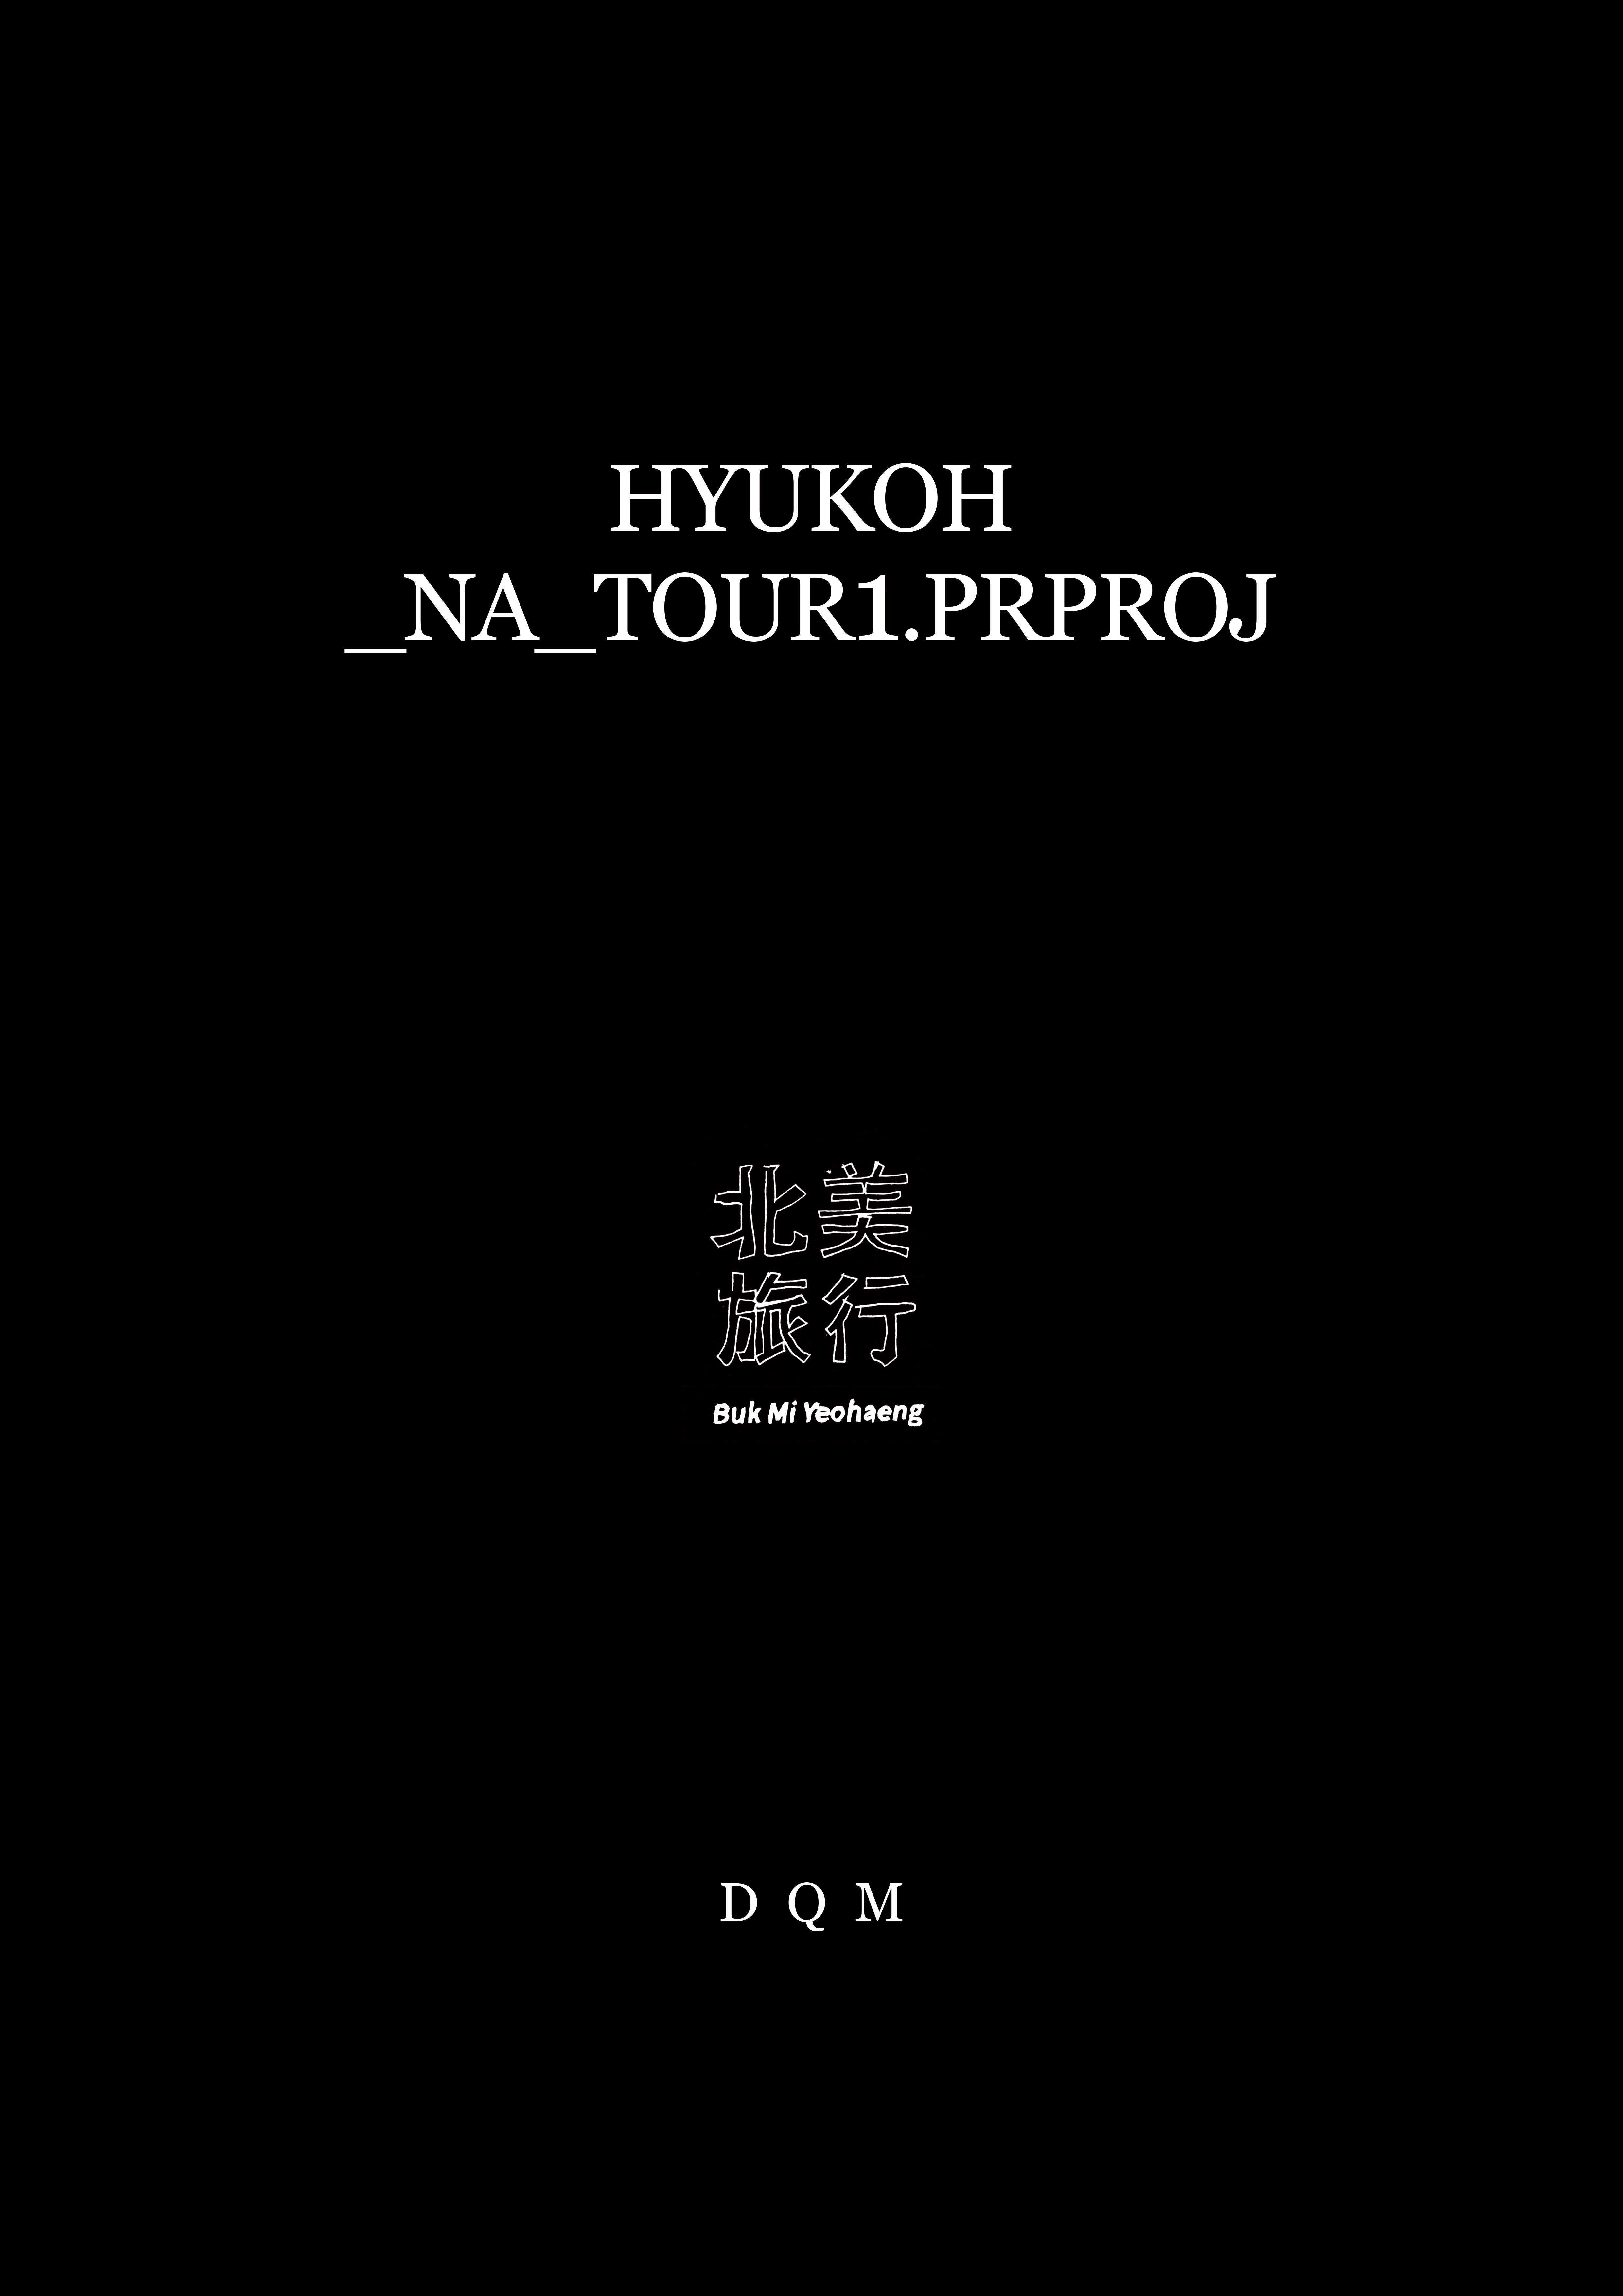 HYUKOH 포스터